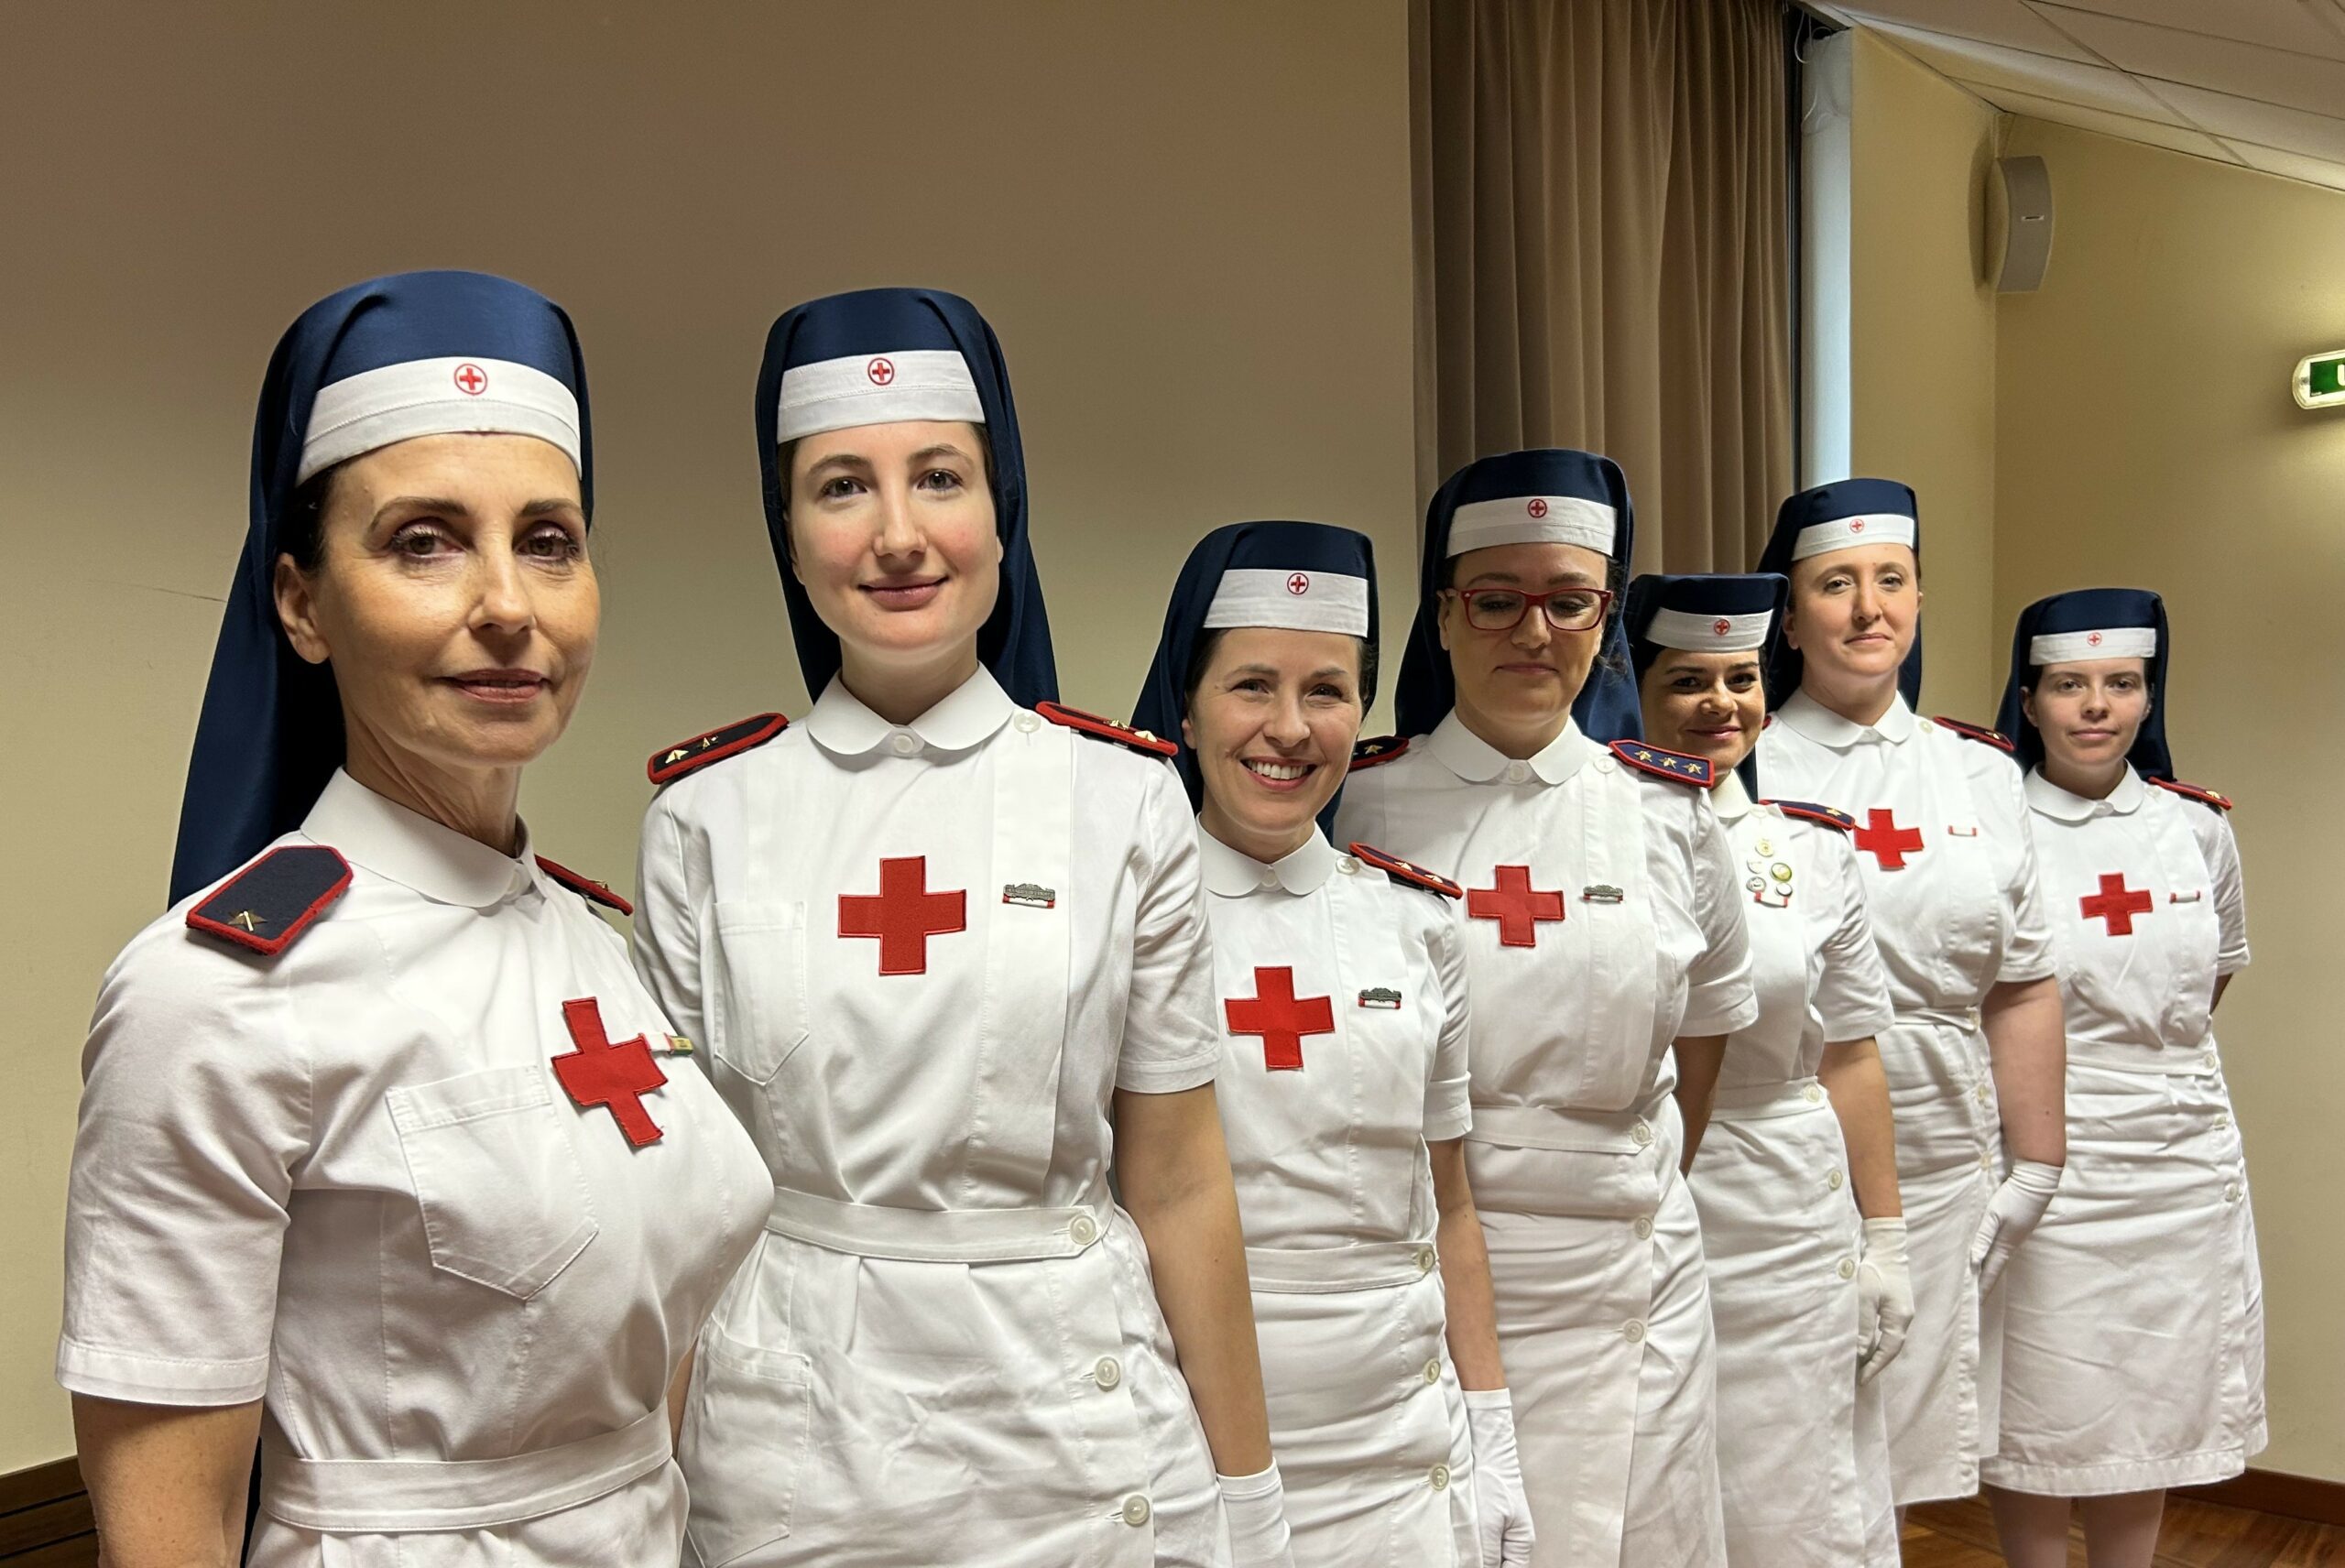 Croce Rossa Internazionale: quest’anno la medaglia al coraggio va ad un’italiana